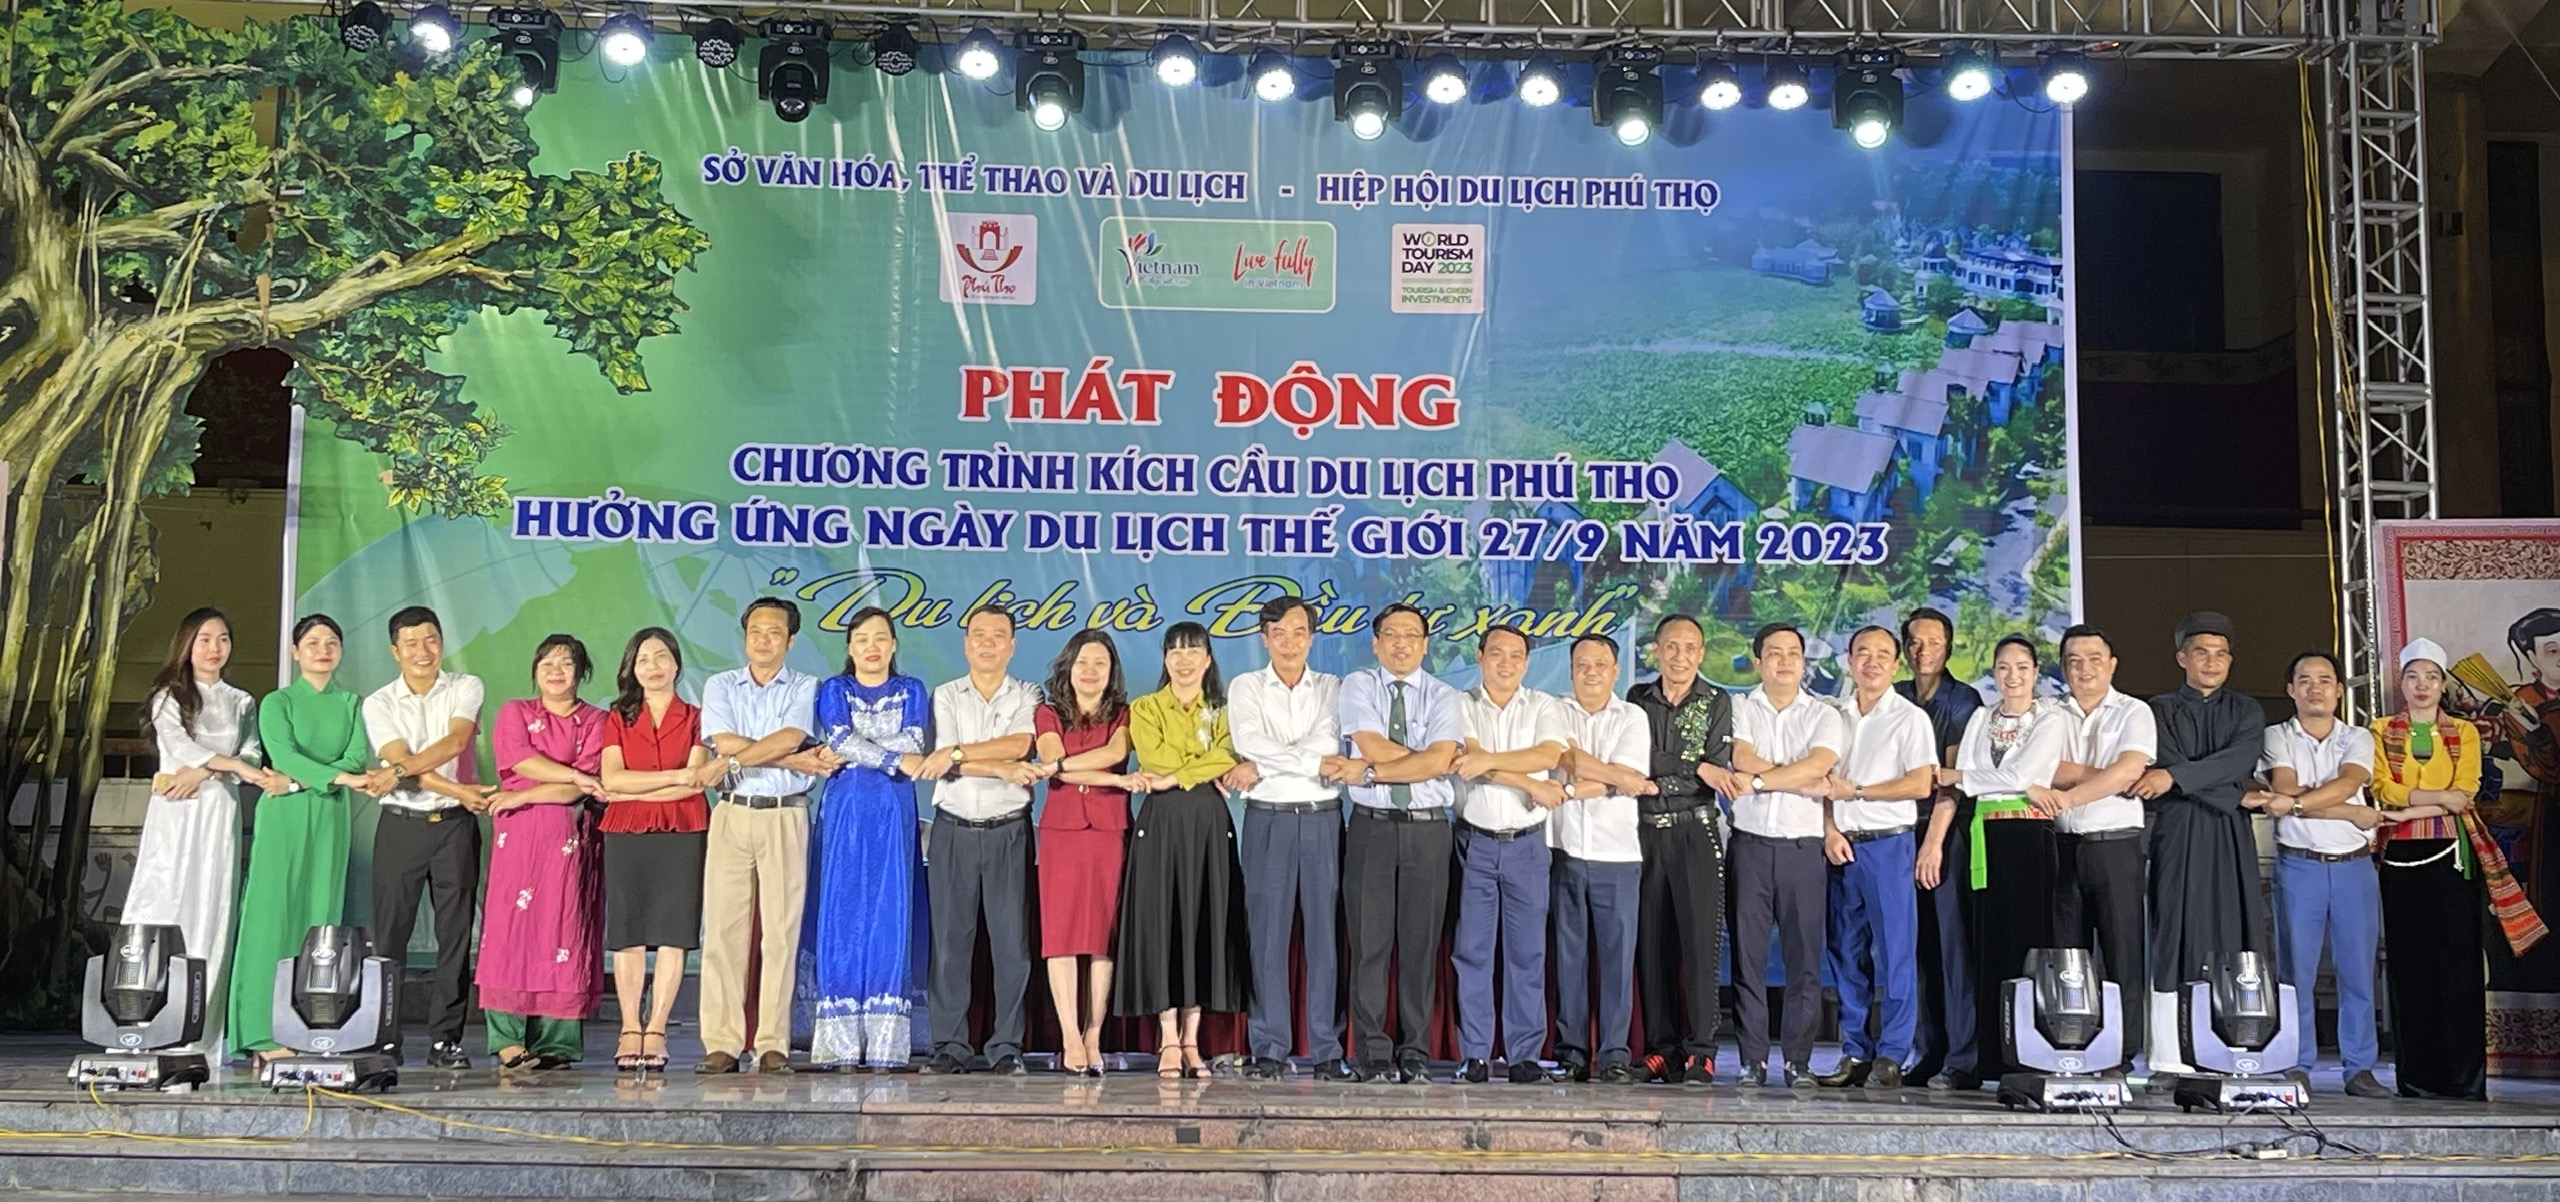 Phú Thọ tổ chức phát động chương trình kích cầu du lịch, hưởng ứng Ngày Du lịch Thế giới 27/9 năm 2023.